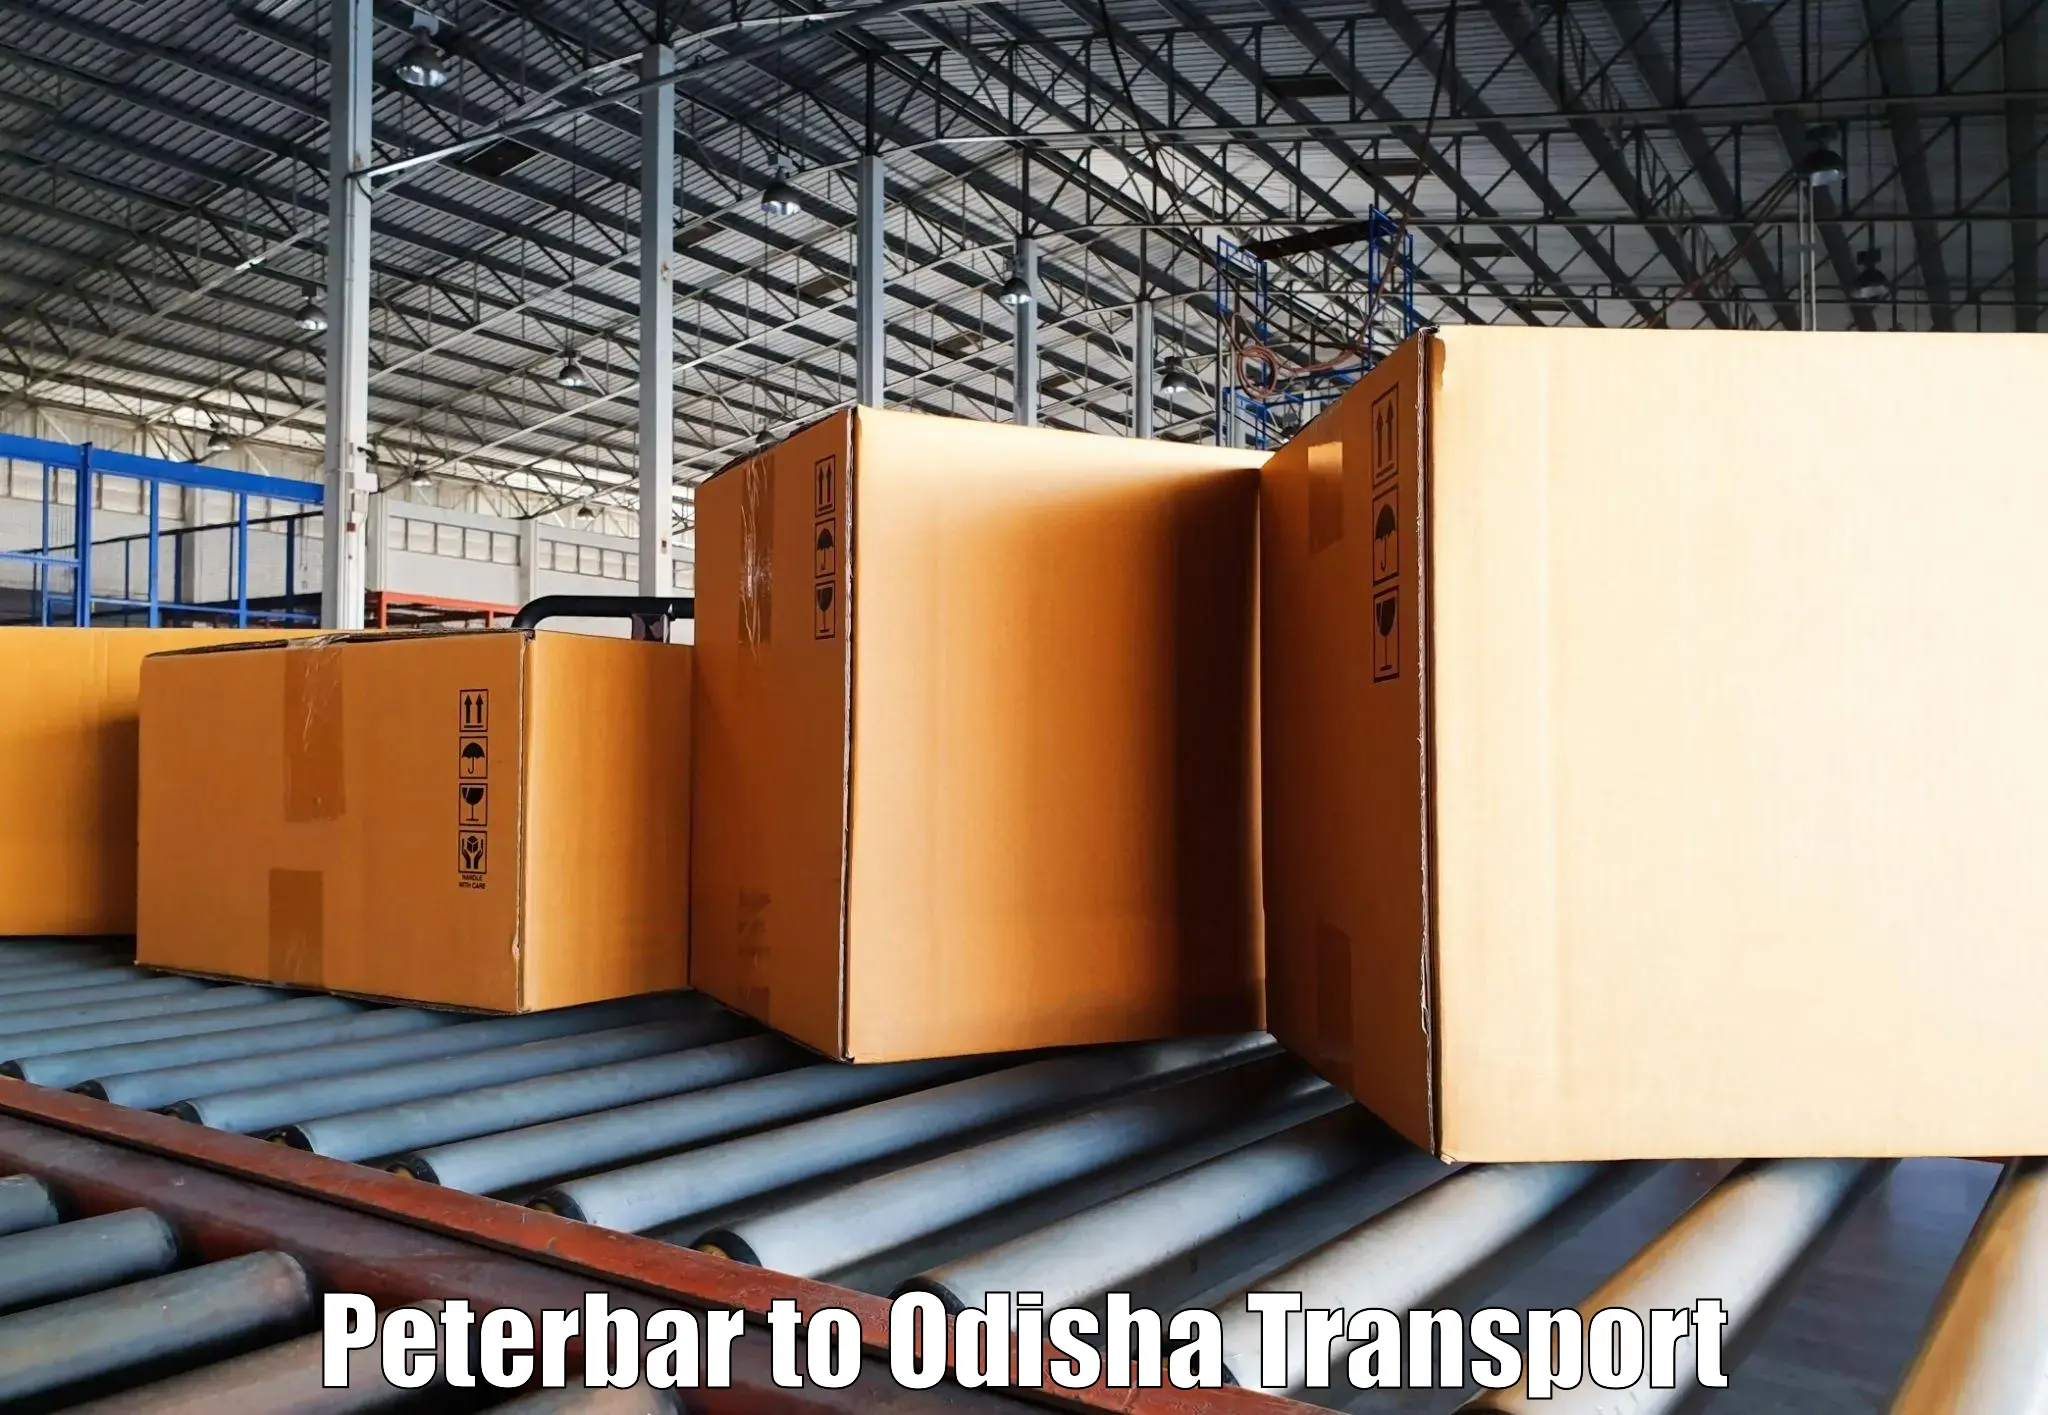 Daily transport service Peterbar to Agarpada